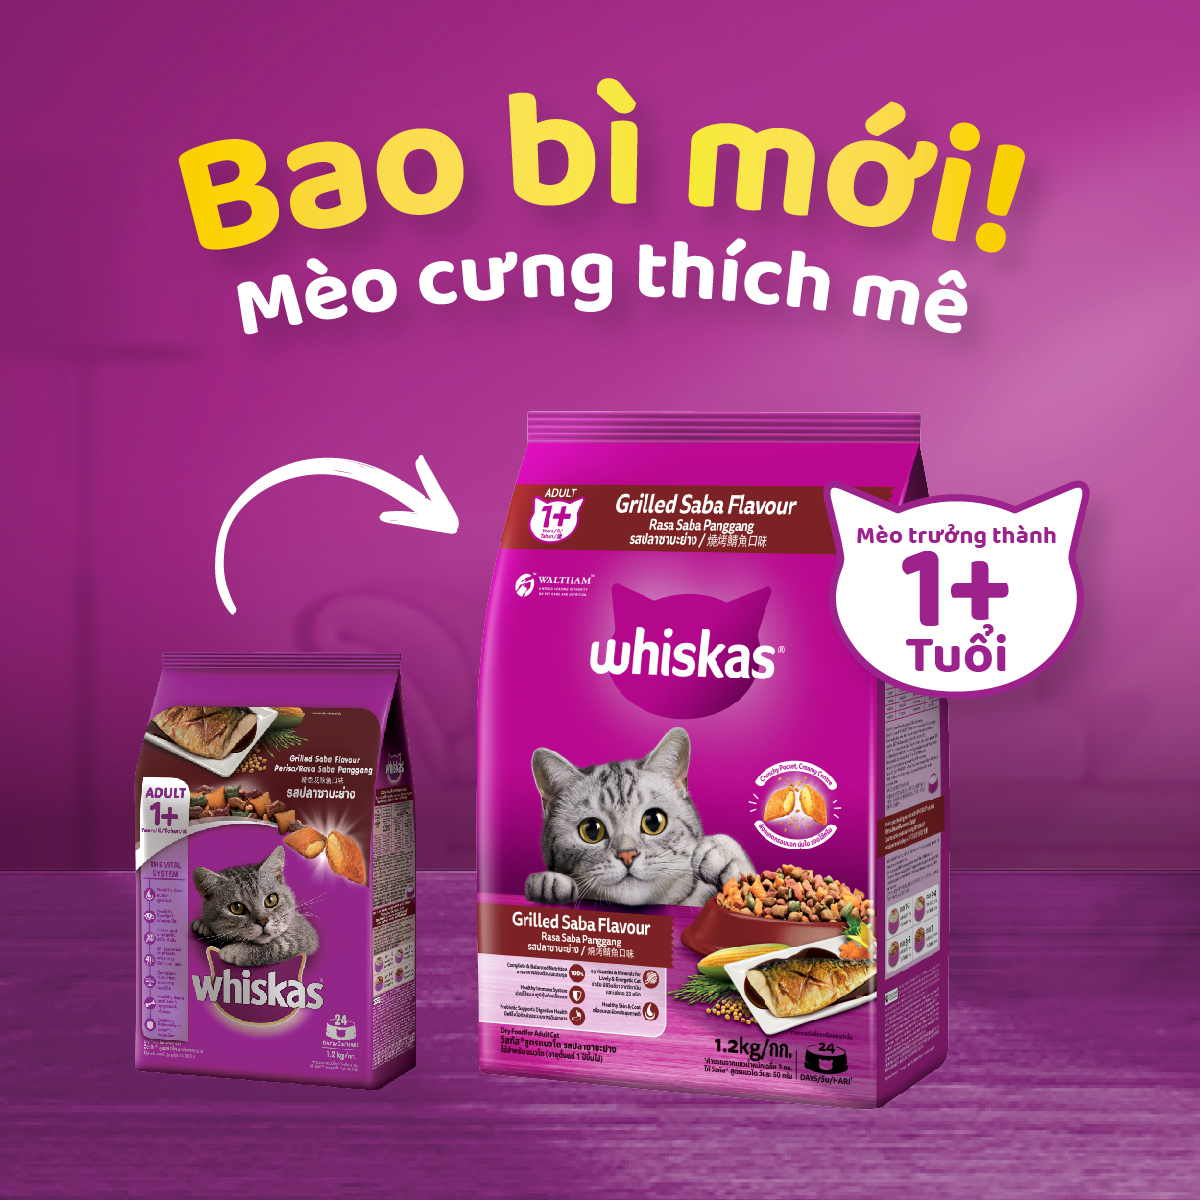 Thức Ăn Cho Mèo Whiskas Adult 1+ Years Vị Saba Nướng 1.2kg/Túi